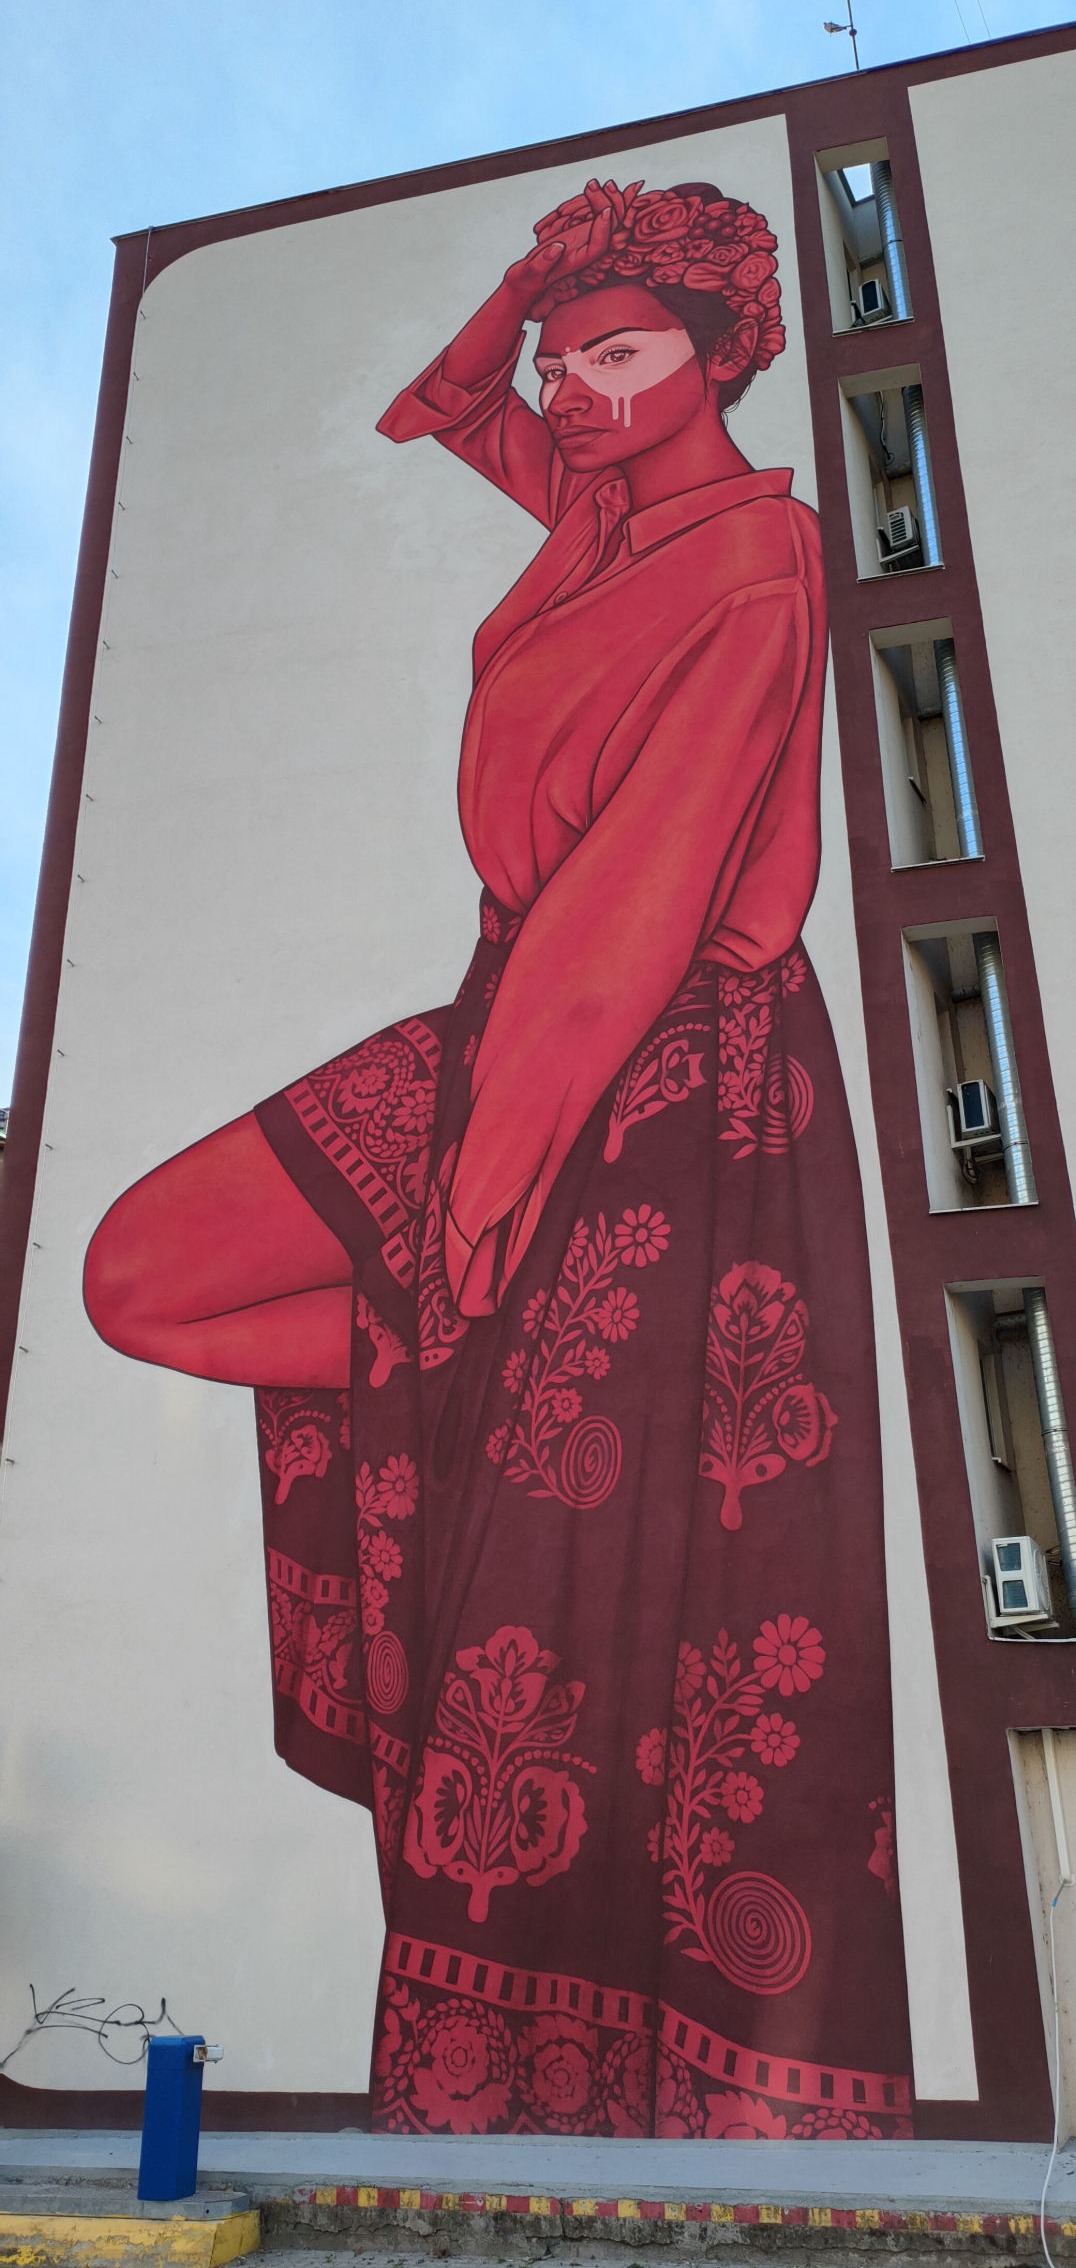 SLOVAKIA / Brastislava / Art / Street Art